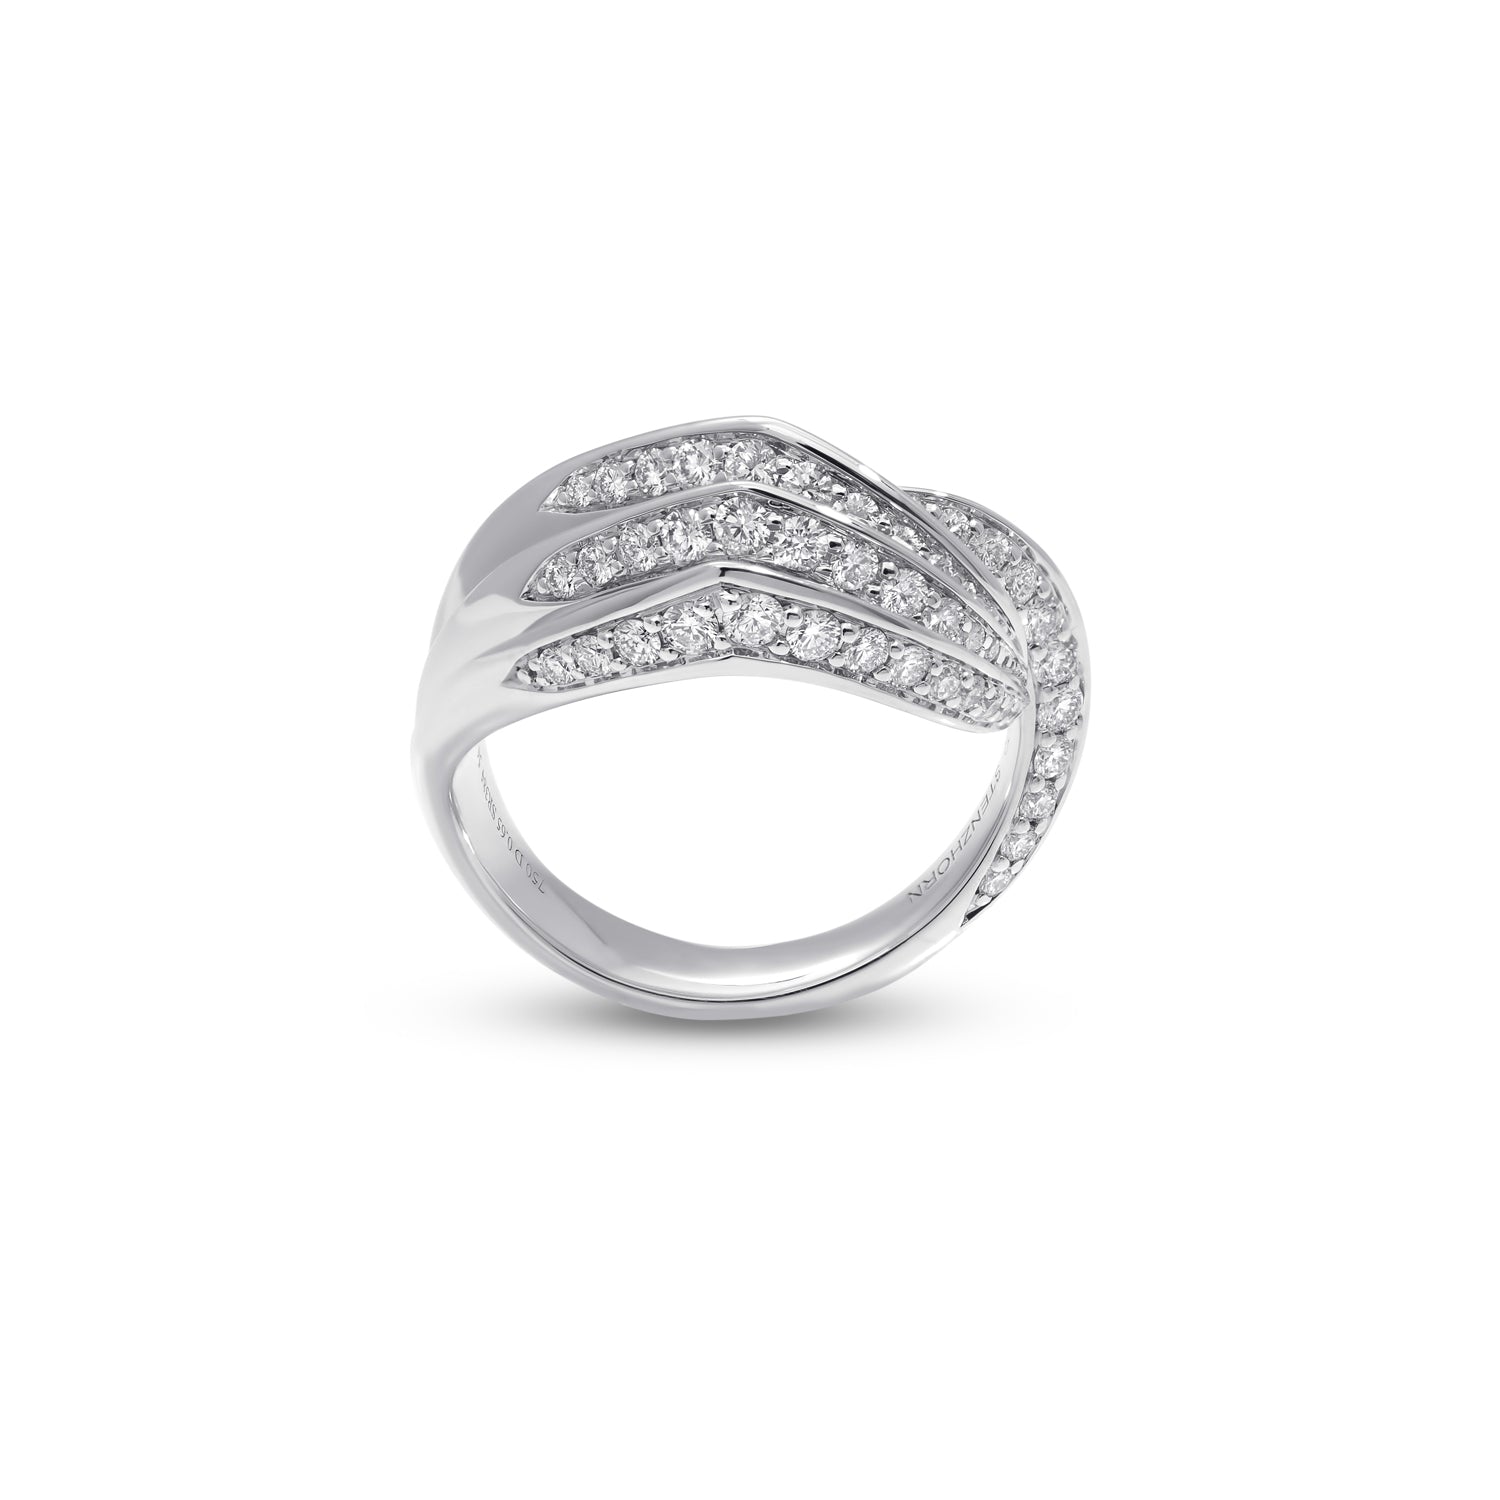 VIVA Ring mit Diamant und roter Emaille